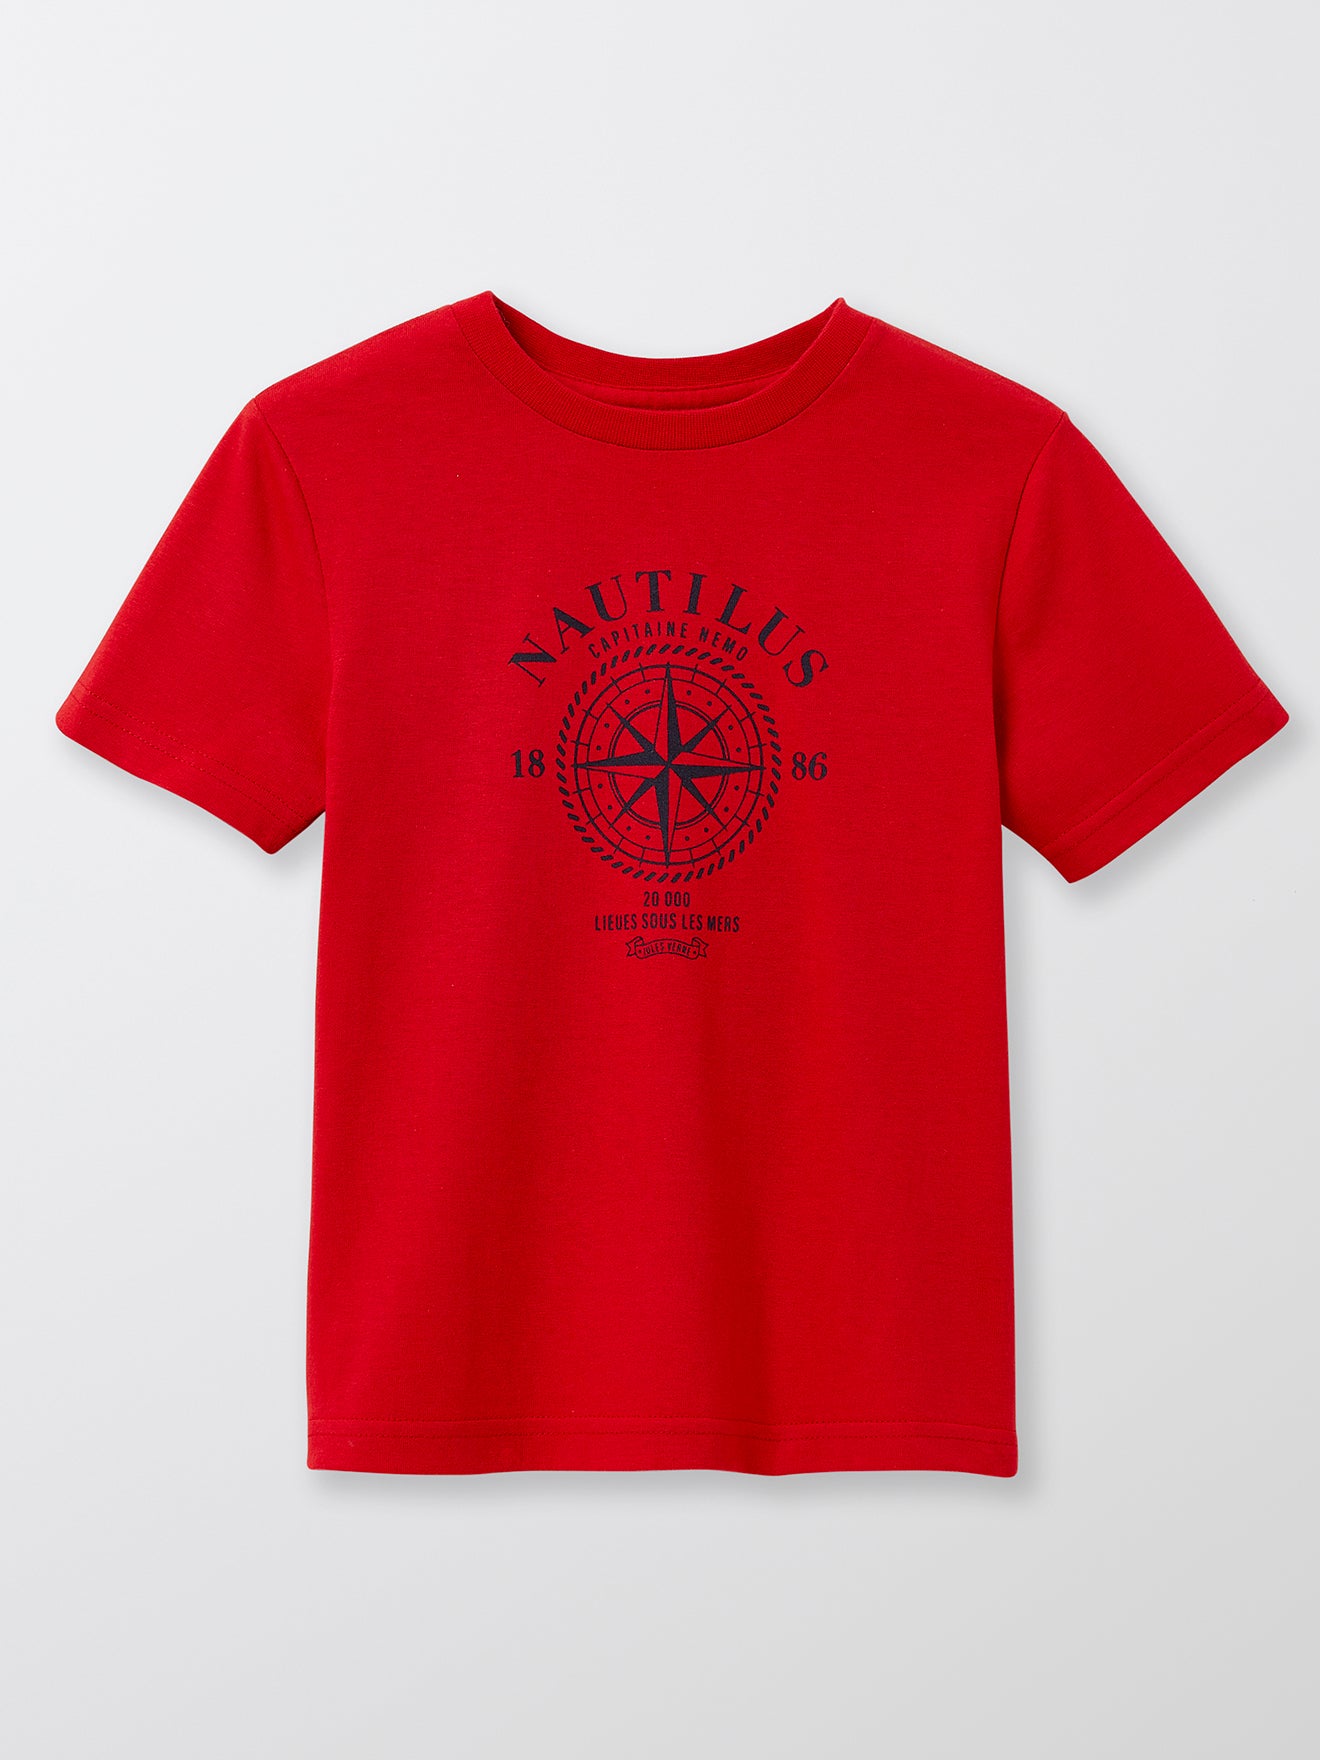 T-shirt Enfant Collection Jules Verne - Coton bio